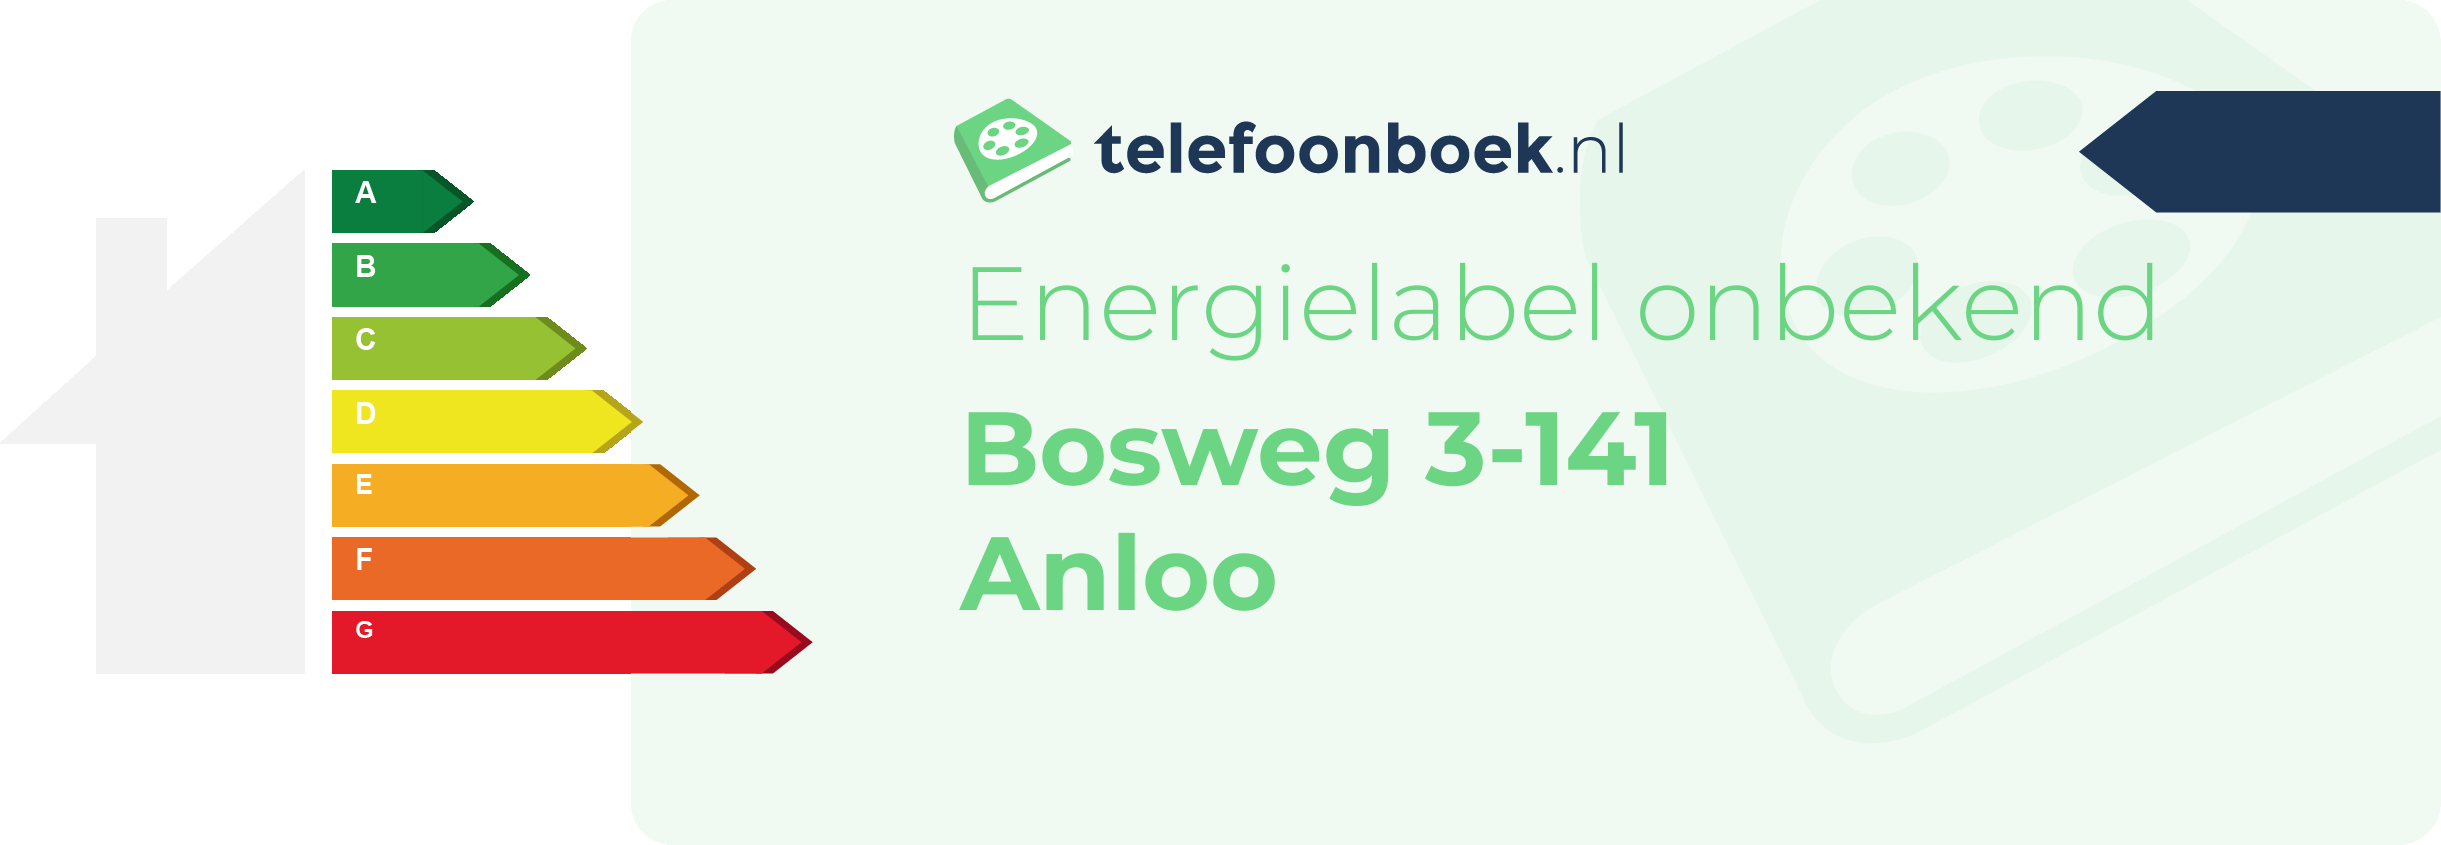 Energielabel Bosweg 3-141 Anloo